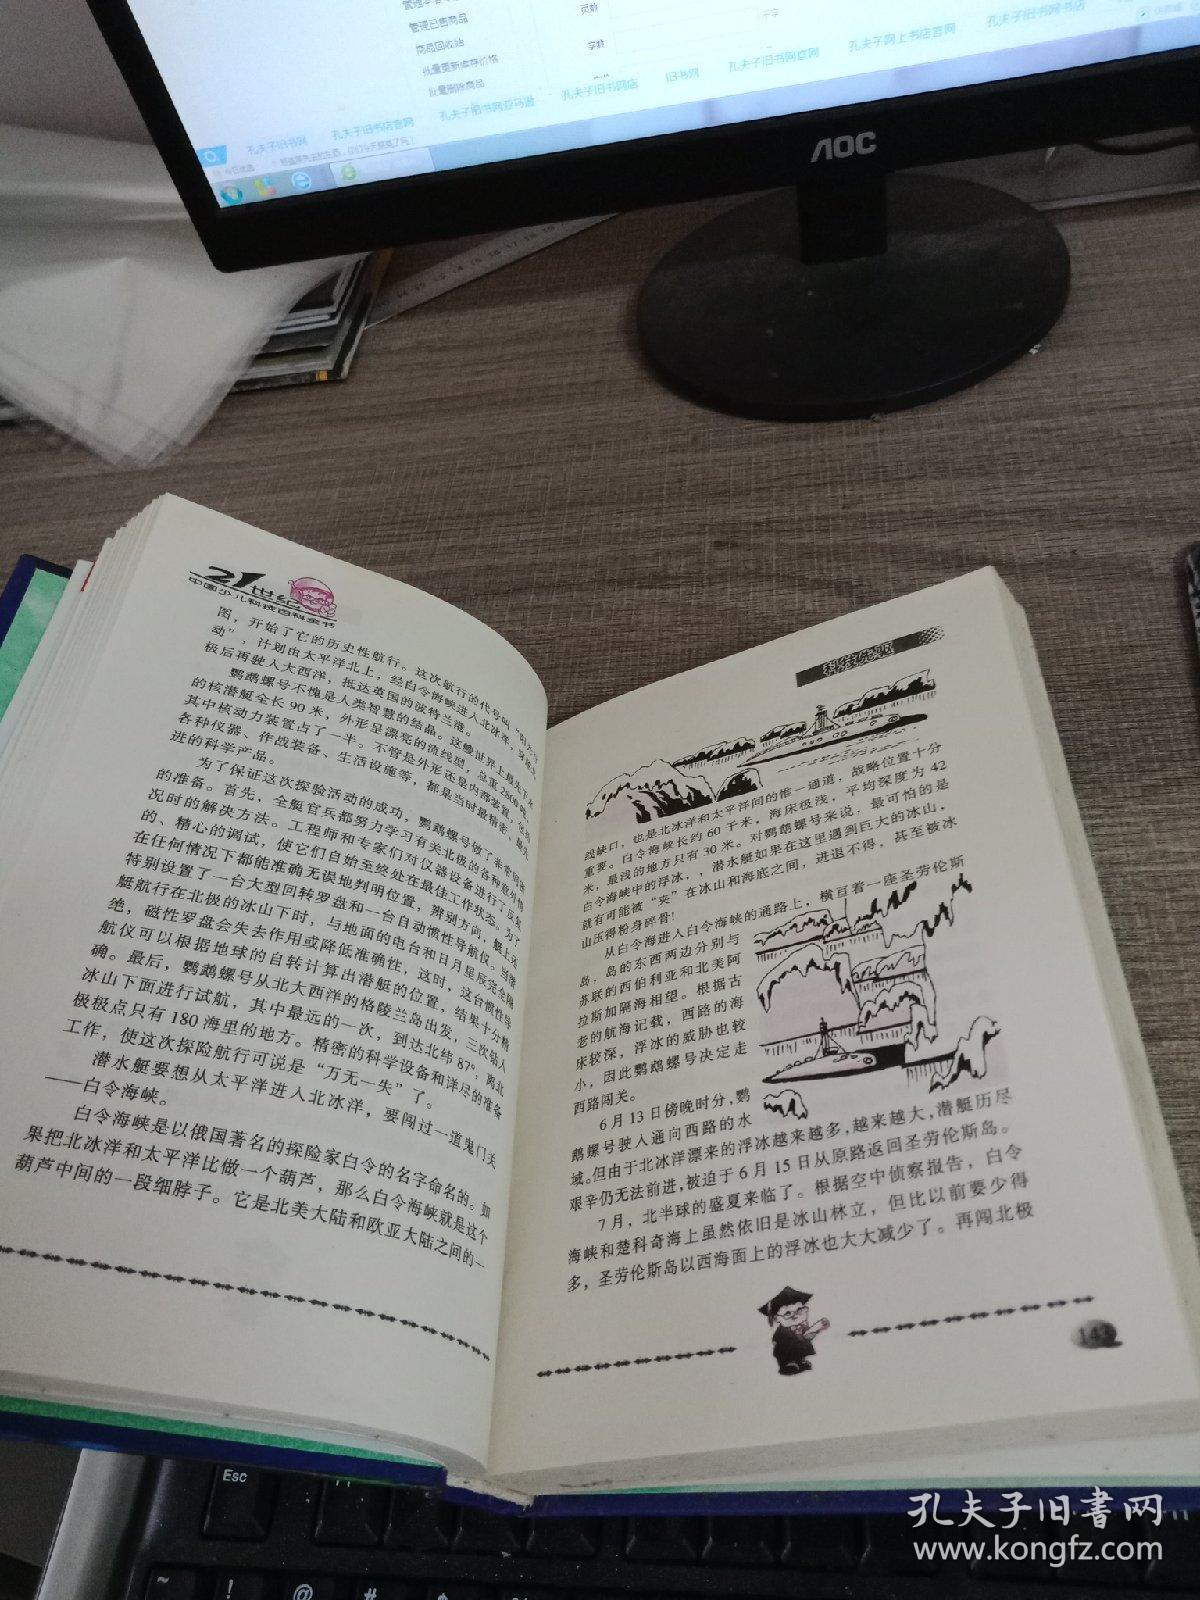 21世纪中国少儿科技百科全书 修订版